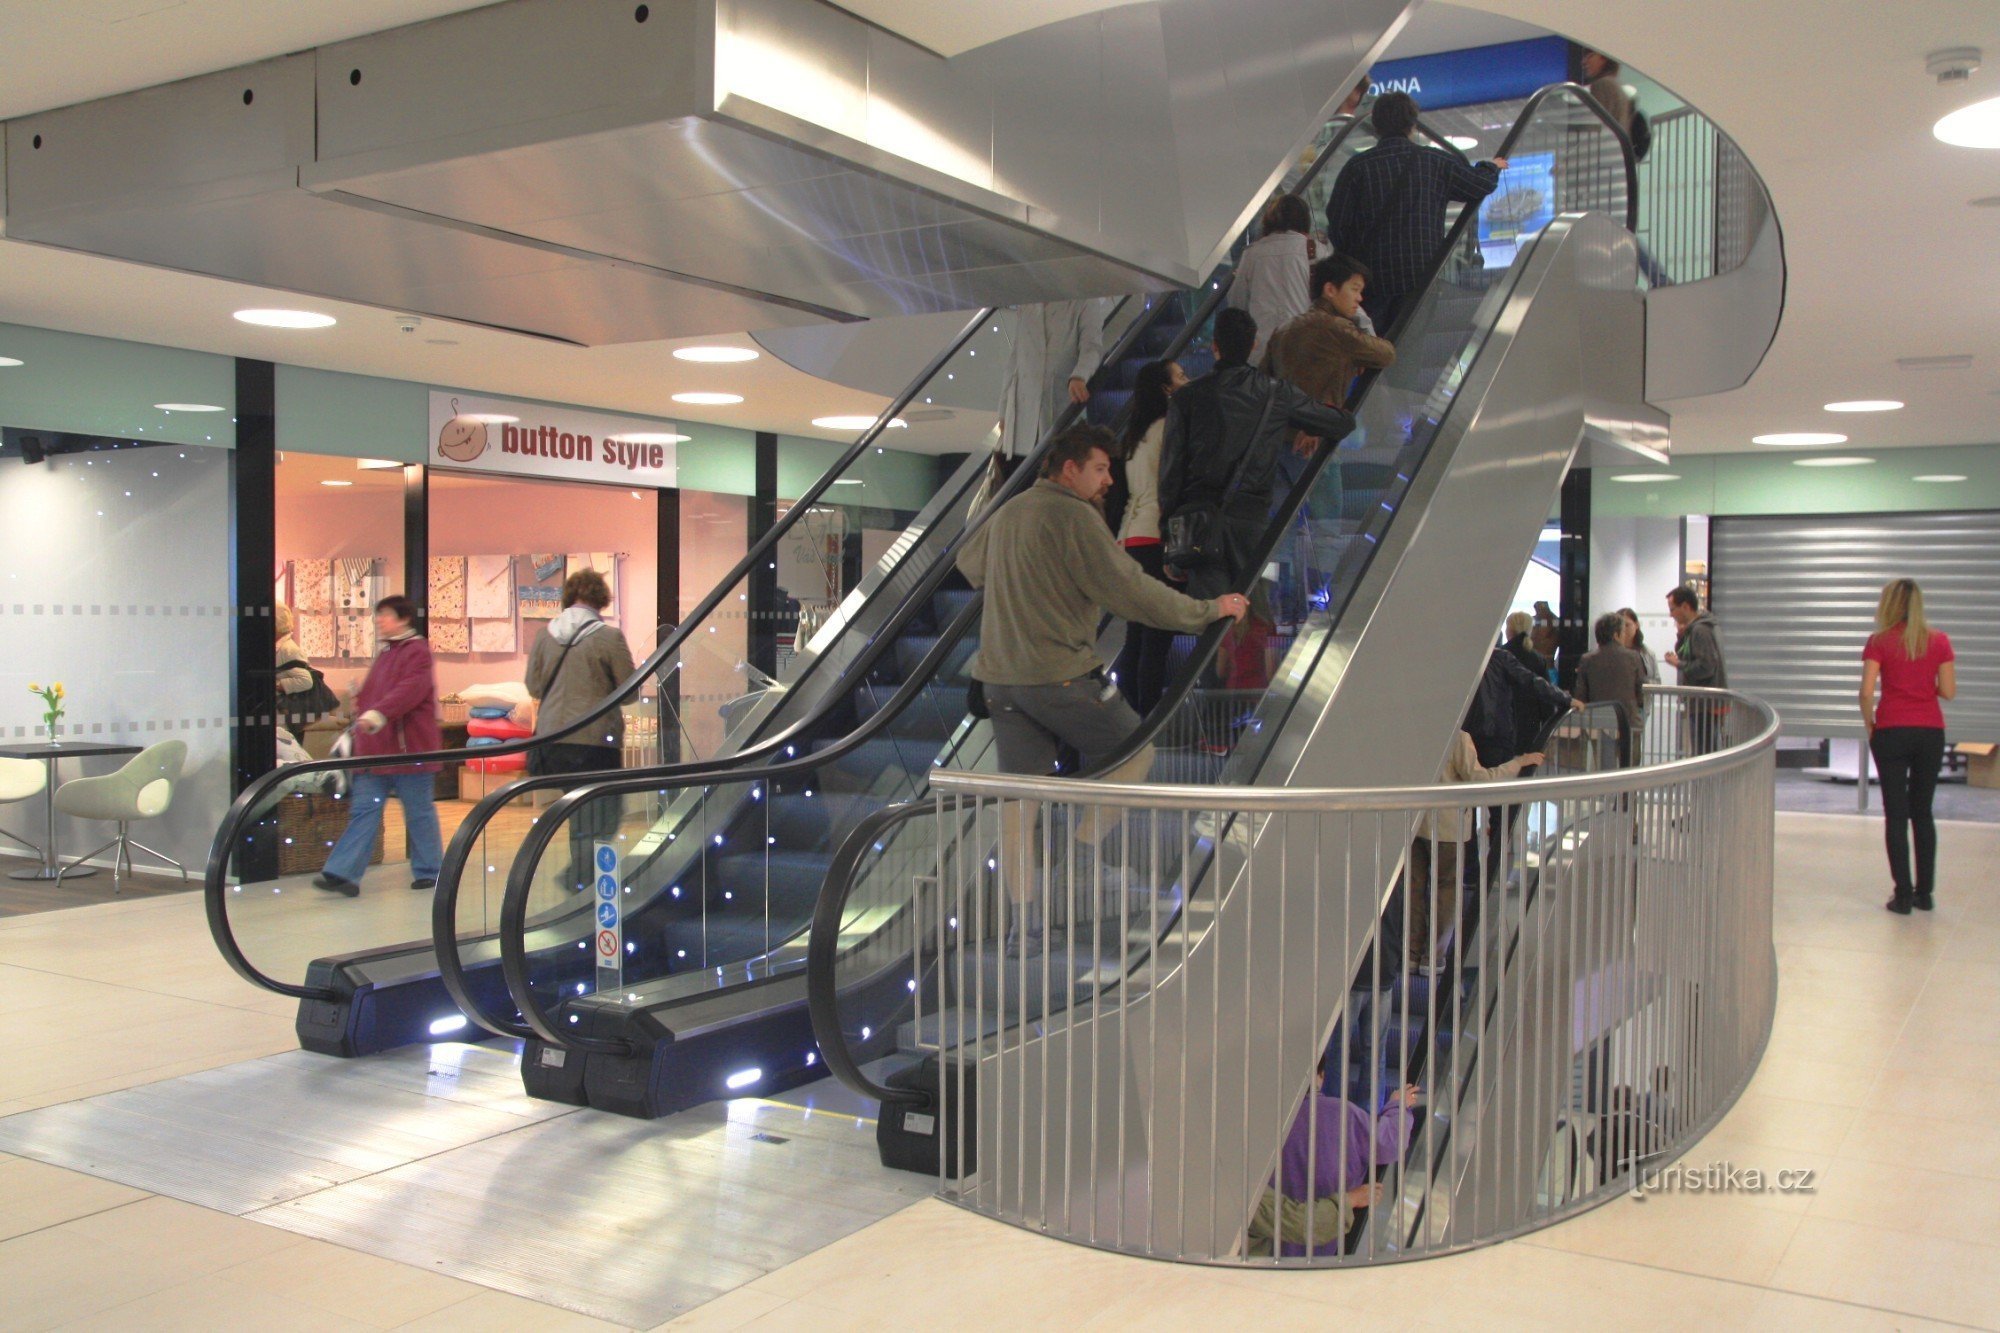 Escalators connect individual floors